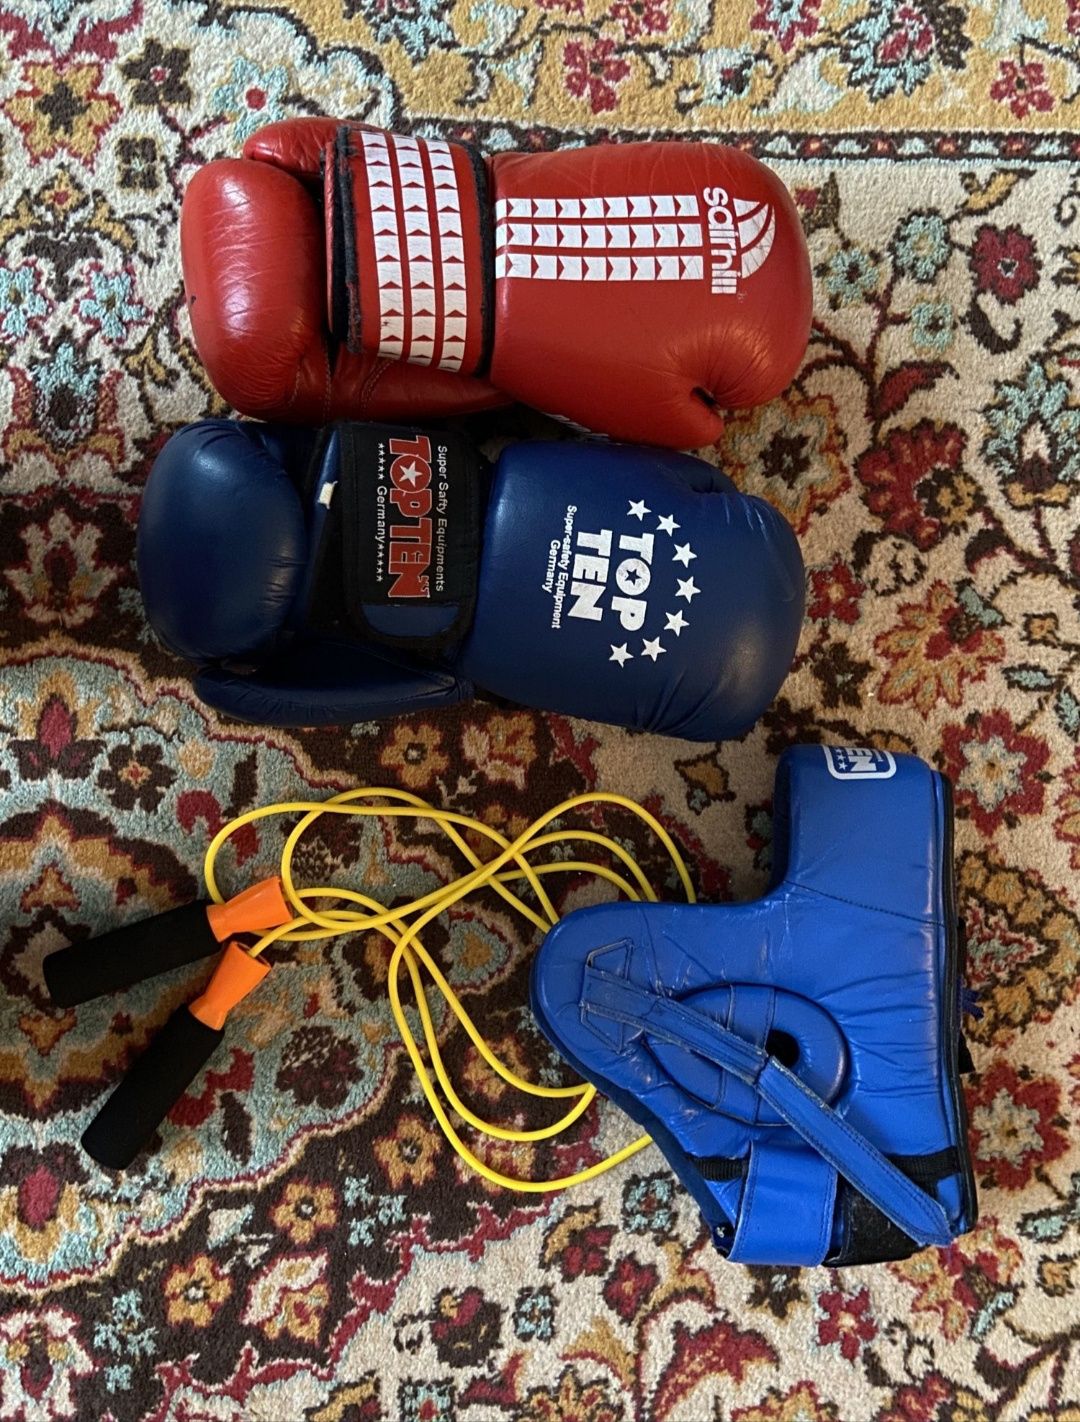 Боксерские перчатки (красный и синий), шлем (синий), скакалка (жёлтый)